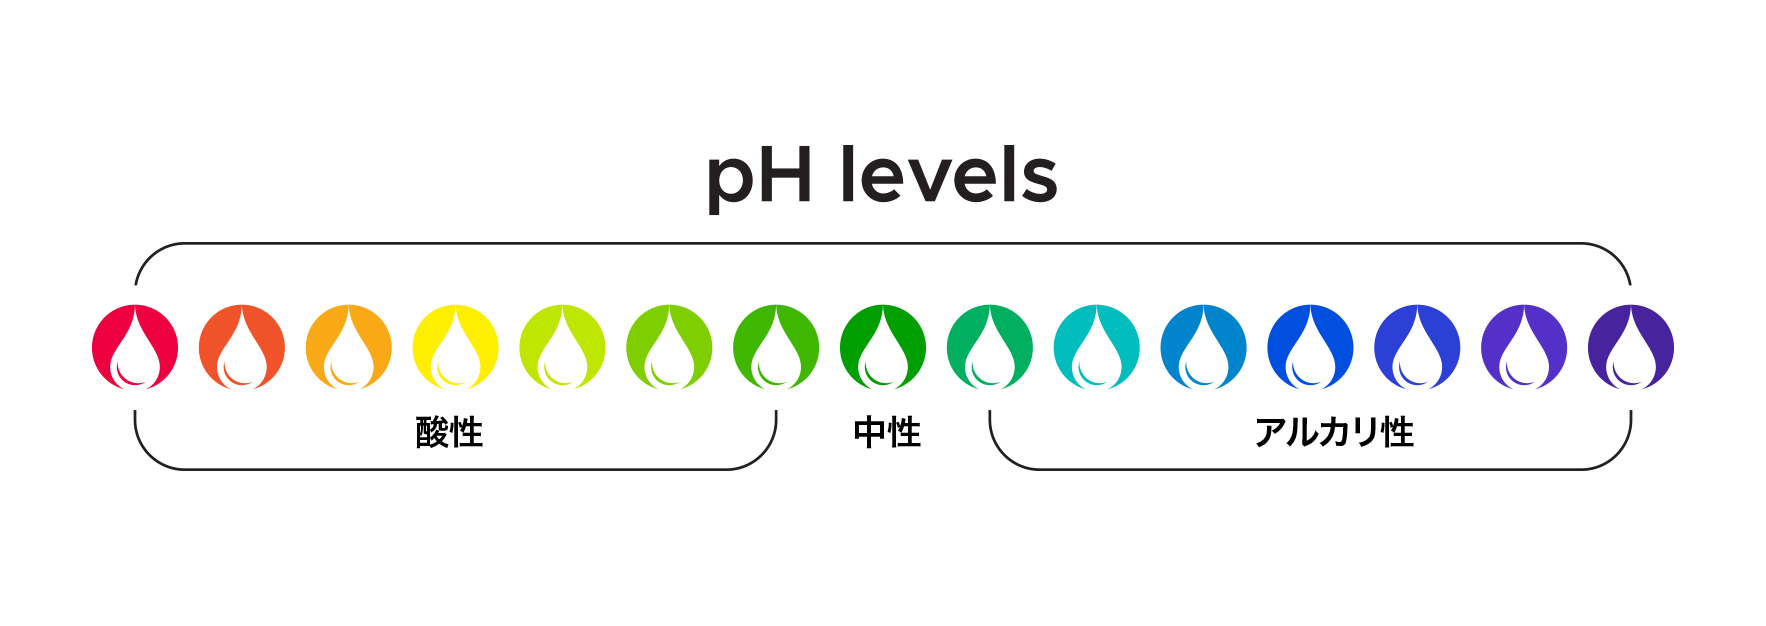 肌の pH バランス、弱酸性範囲